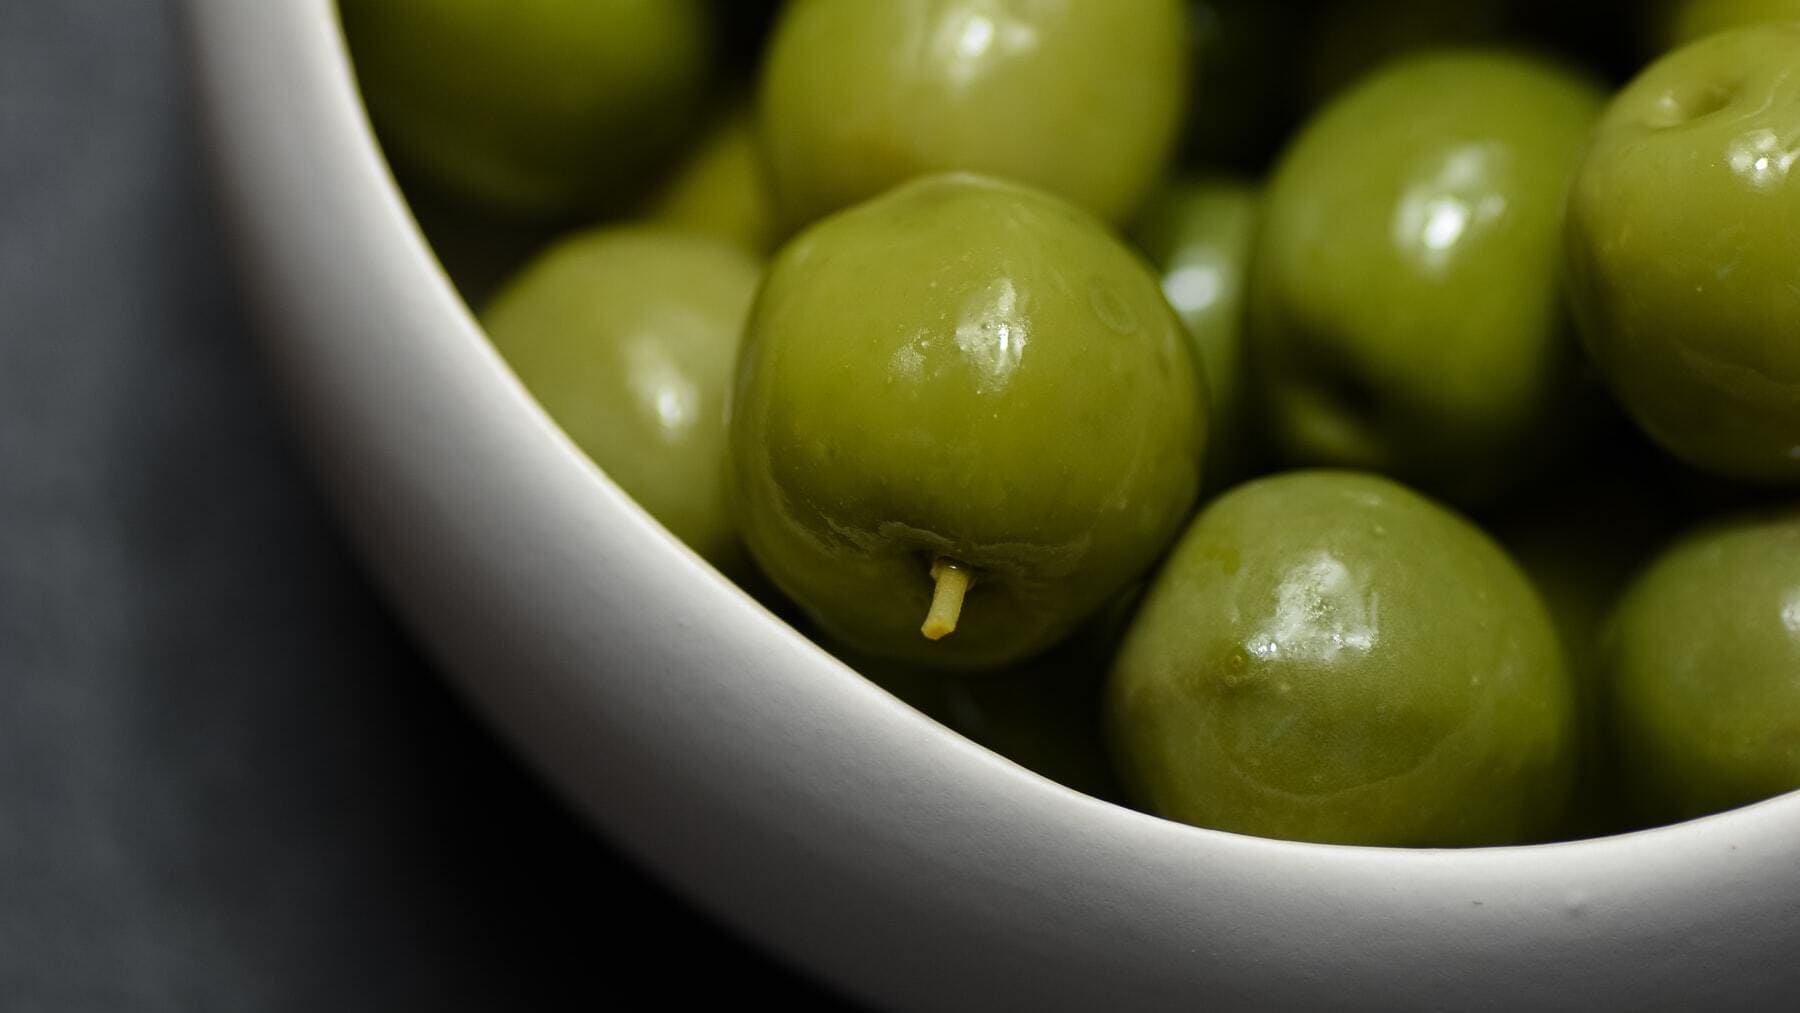 ¿Aceituna u oliva? ¿Cómo se dice realmente al fruto del olivo?